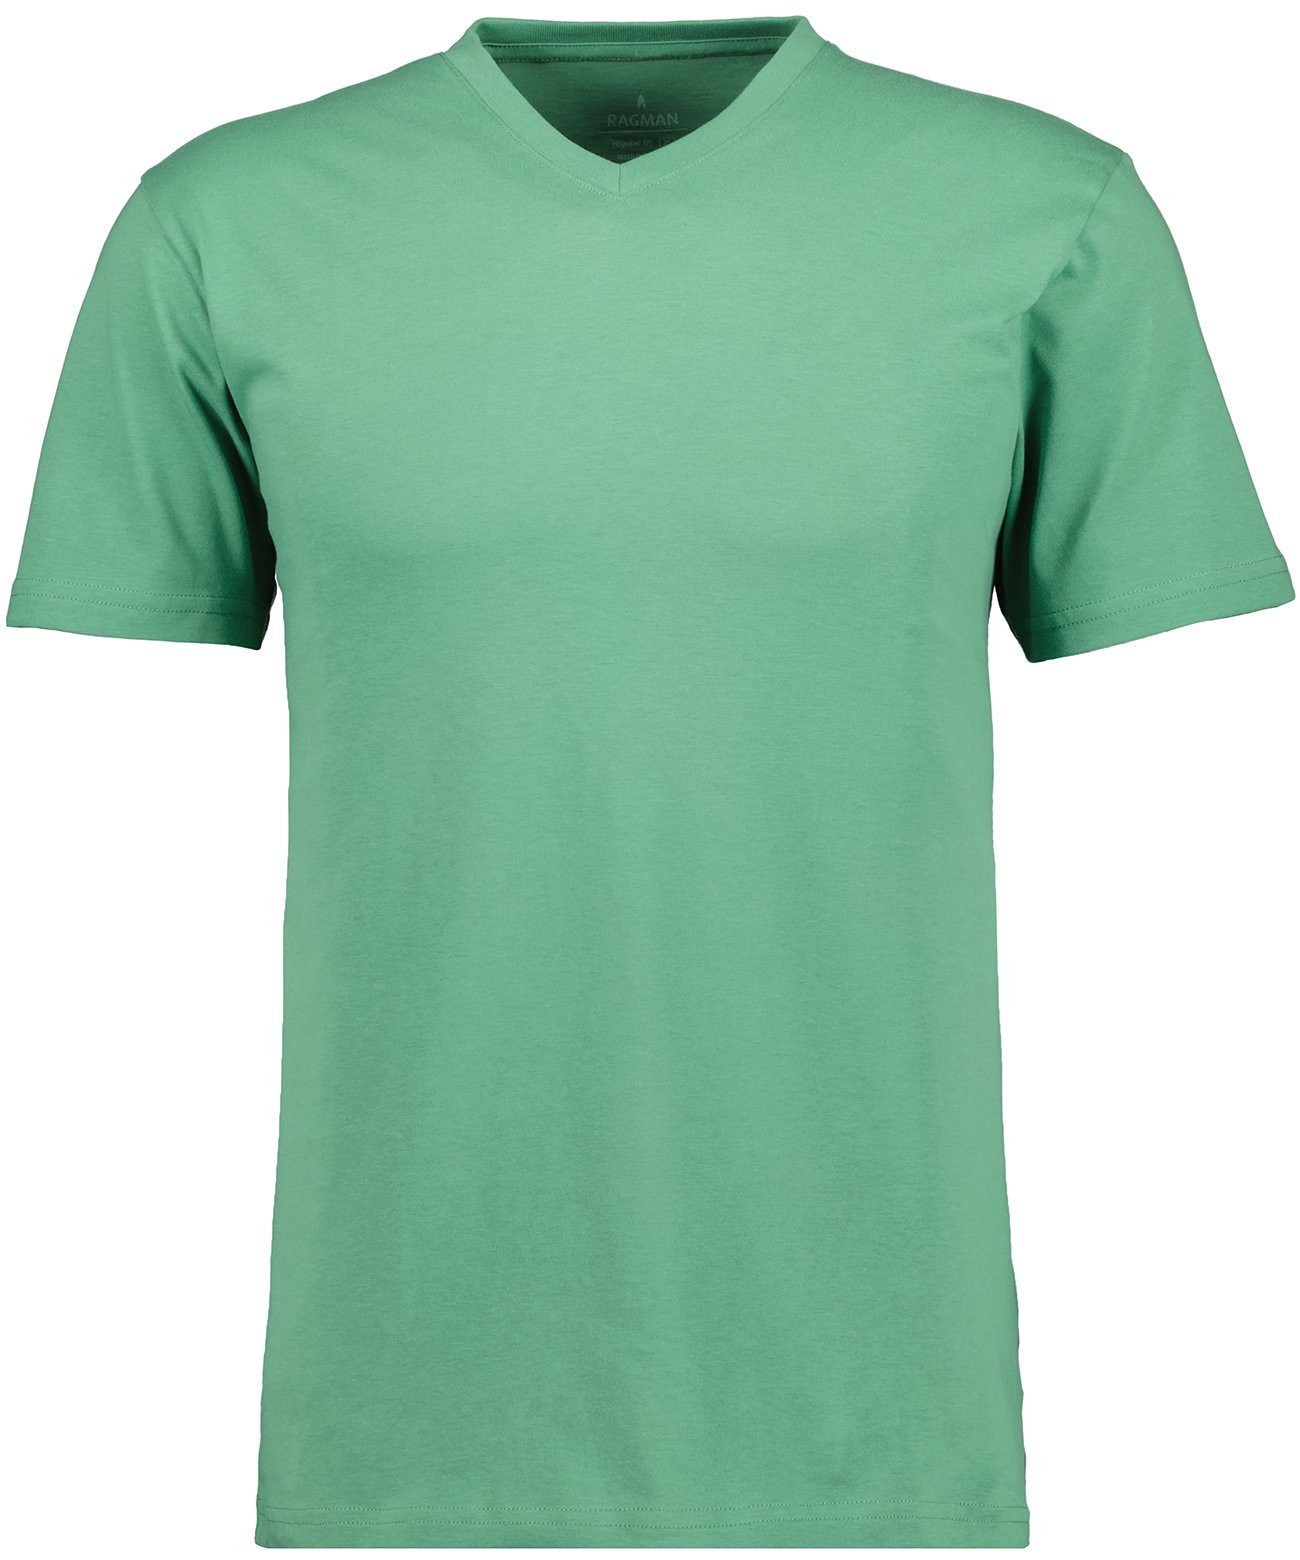 RAGMAN T-Shirt Grasgrün-370